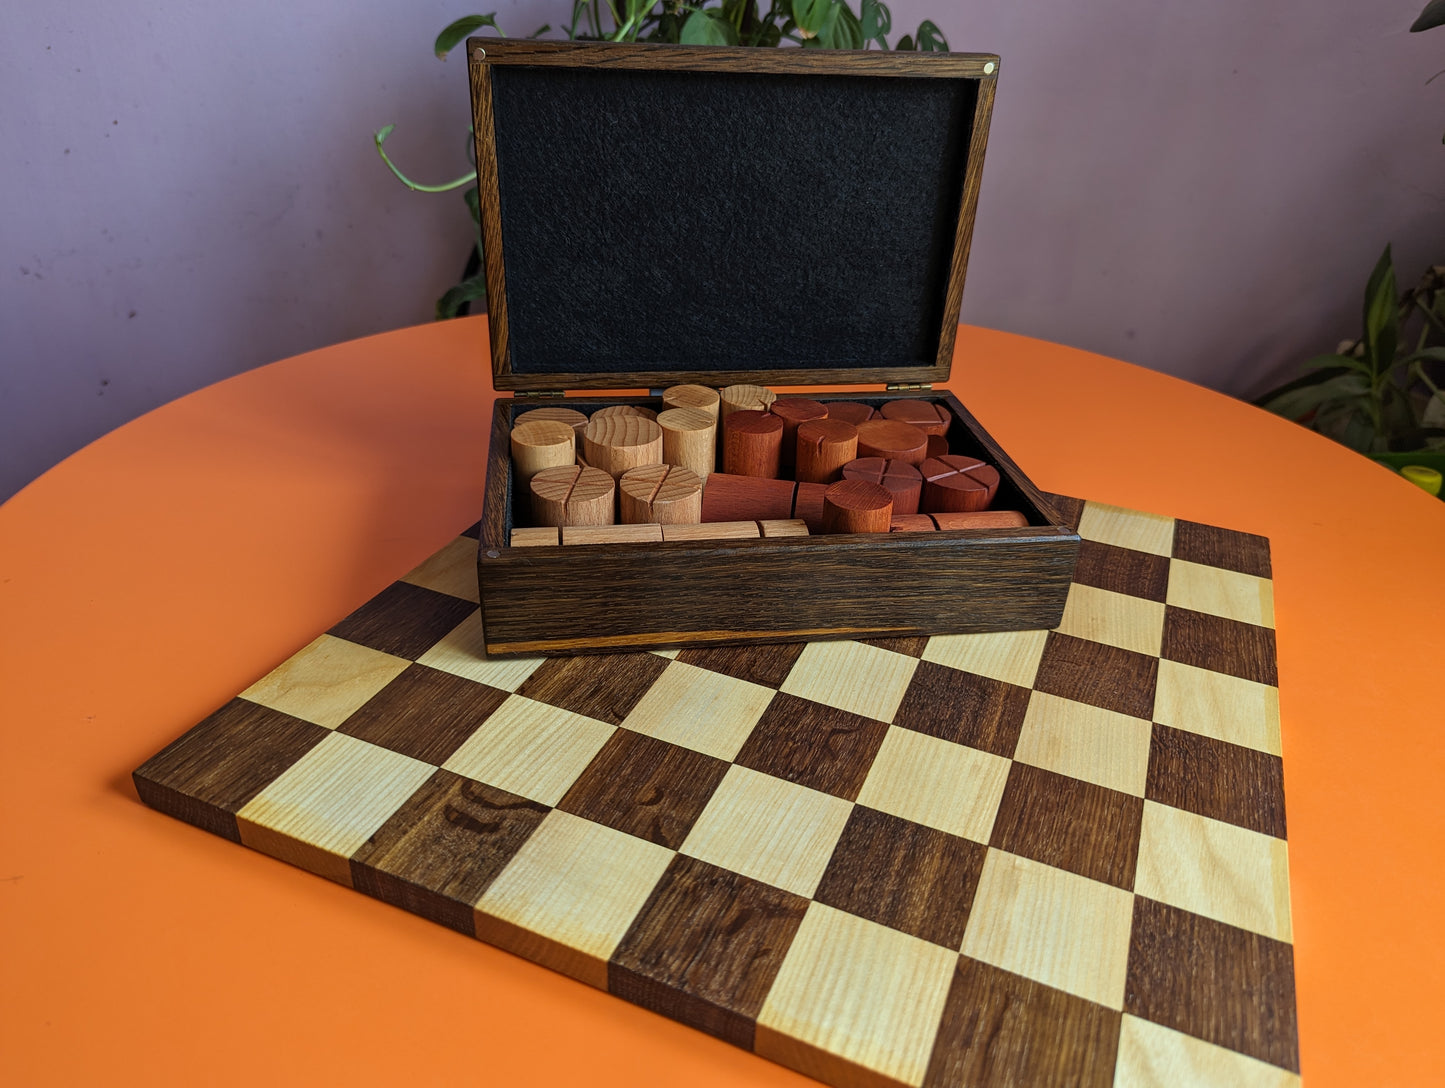 Wooden Chess Set by WoodIdeas. Beech wood handmade Modern chess